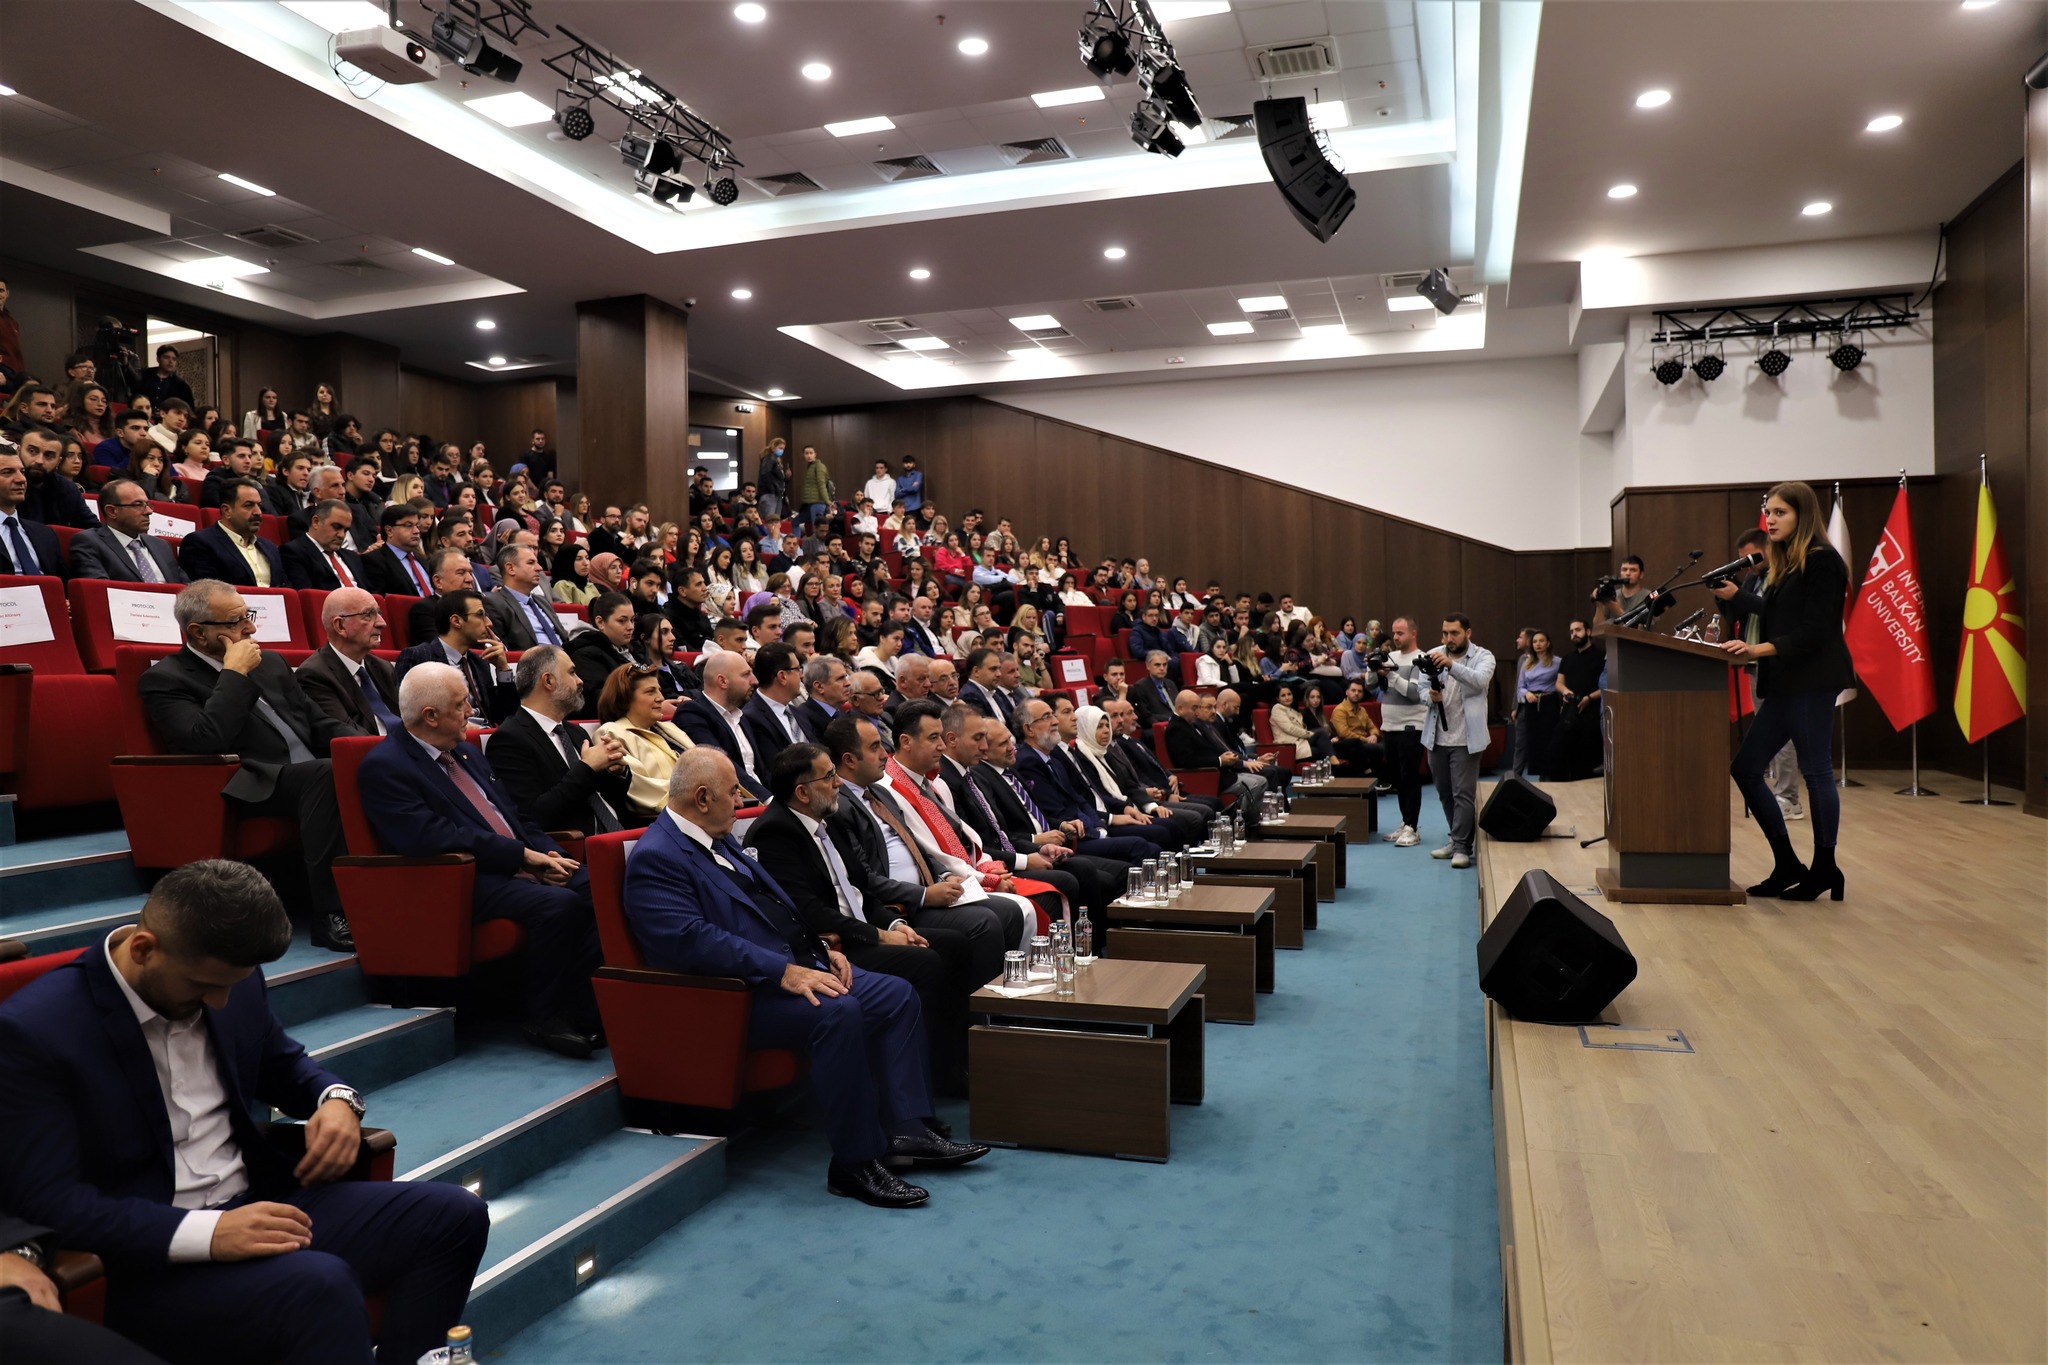 İBU’da 2022/23 Akademik Yılı Resmi Açılış Töreni düzenlendi